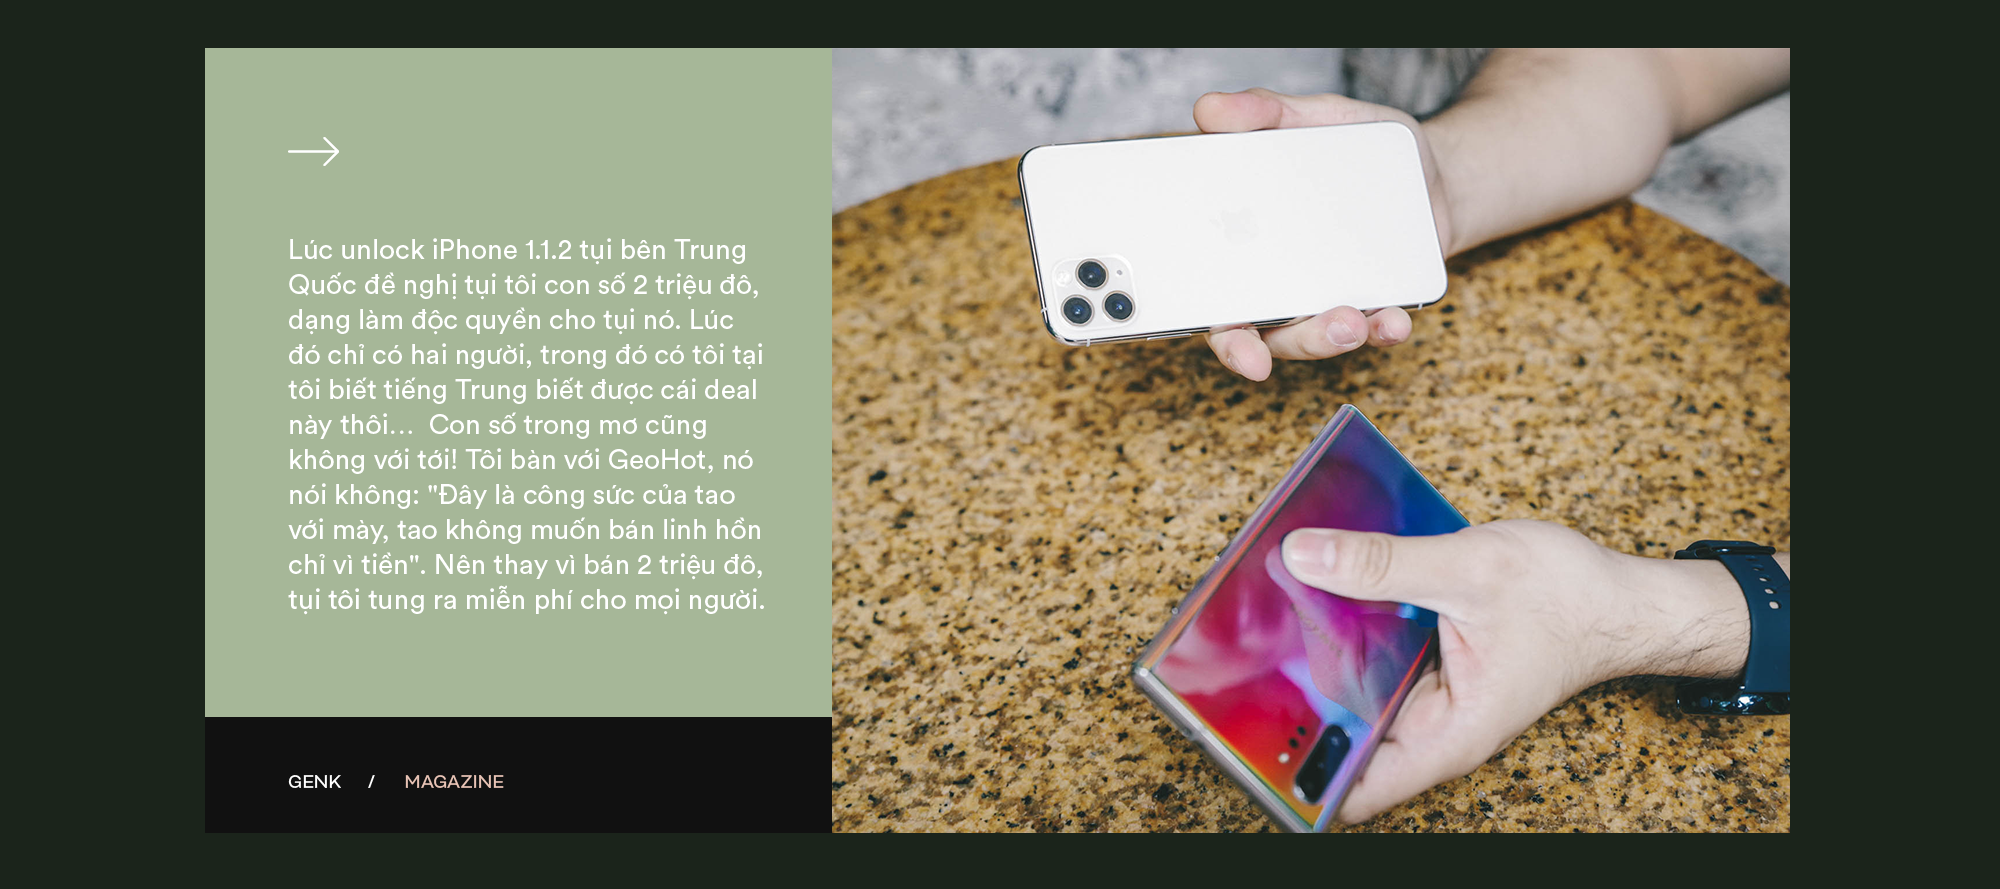 Phỏng vấn người Việt từng hack iPhone đời đầu, cộng sự của huyền thoại GeoHot, vừa chuyển phe sang Android vì quá chán iOS - Ảnh 8.